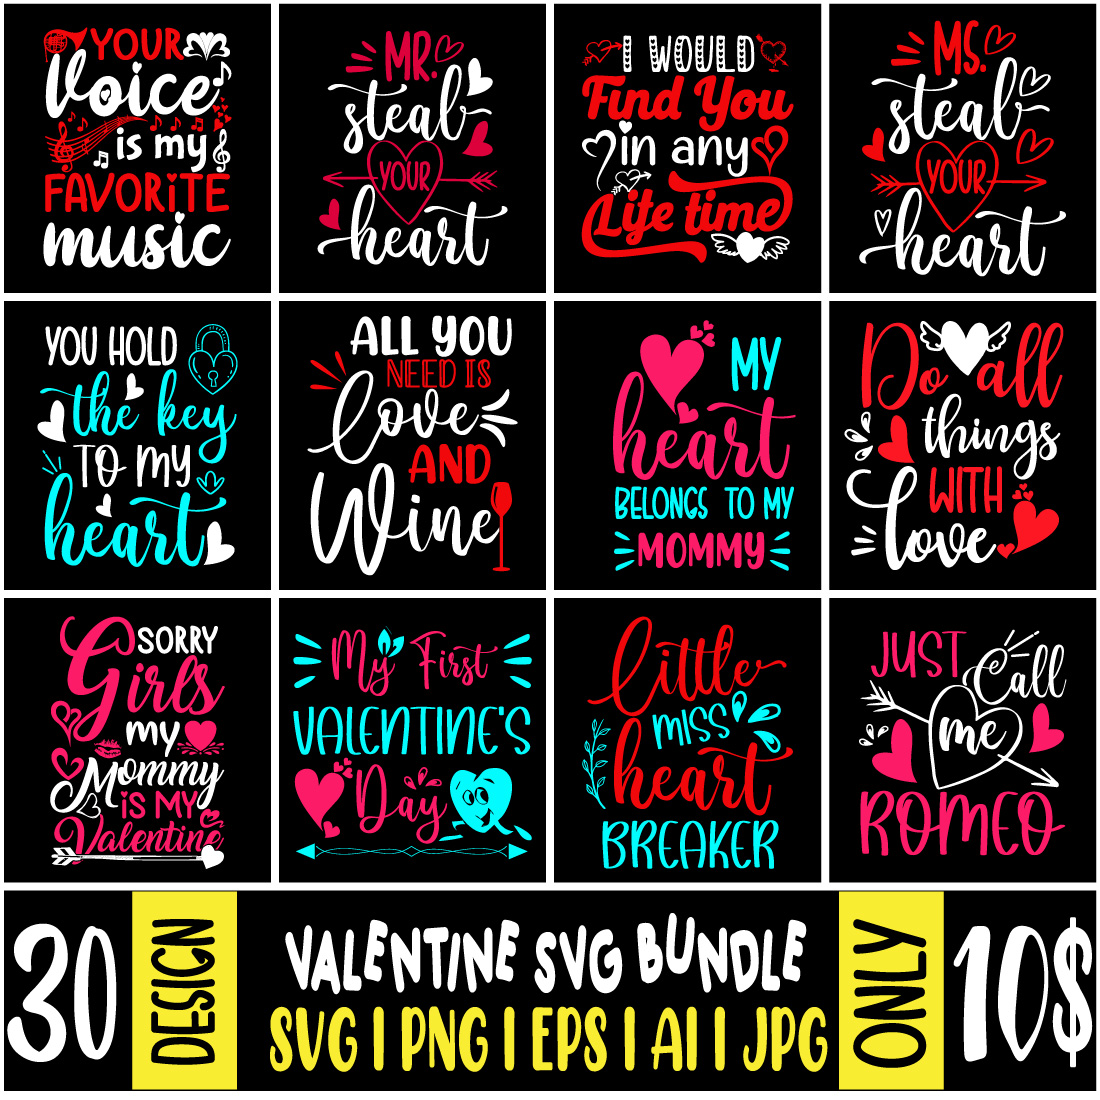 Valentine's day T-shirt Design SVG Bundle cover image.